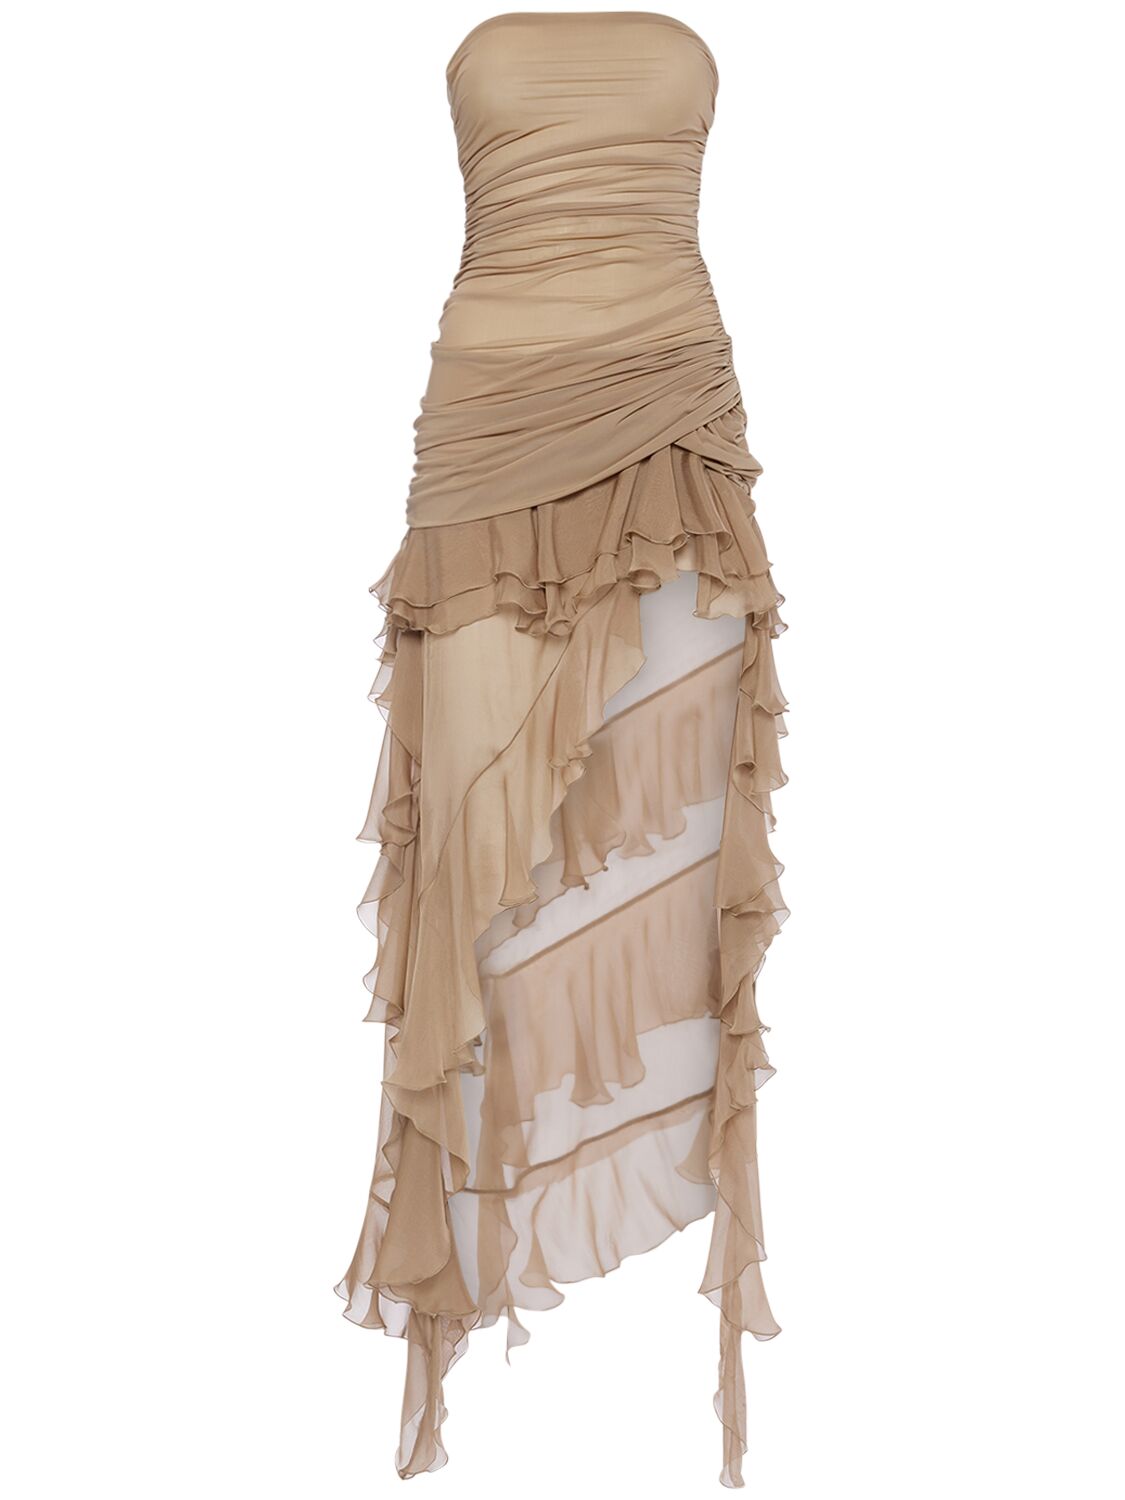 Image of Ruffled Chiffon Strapless Dress